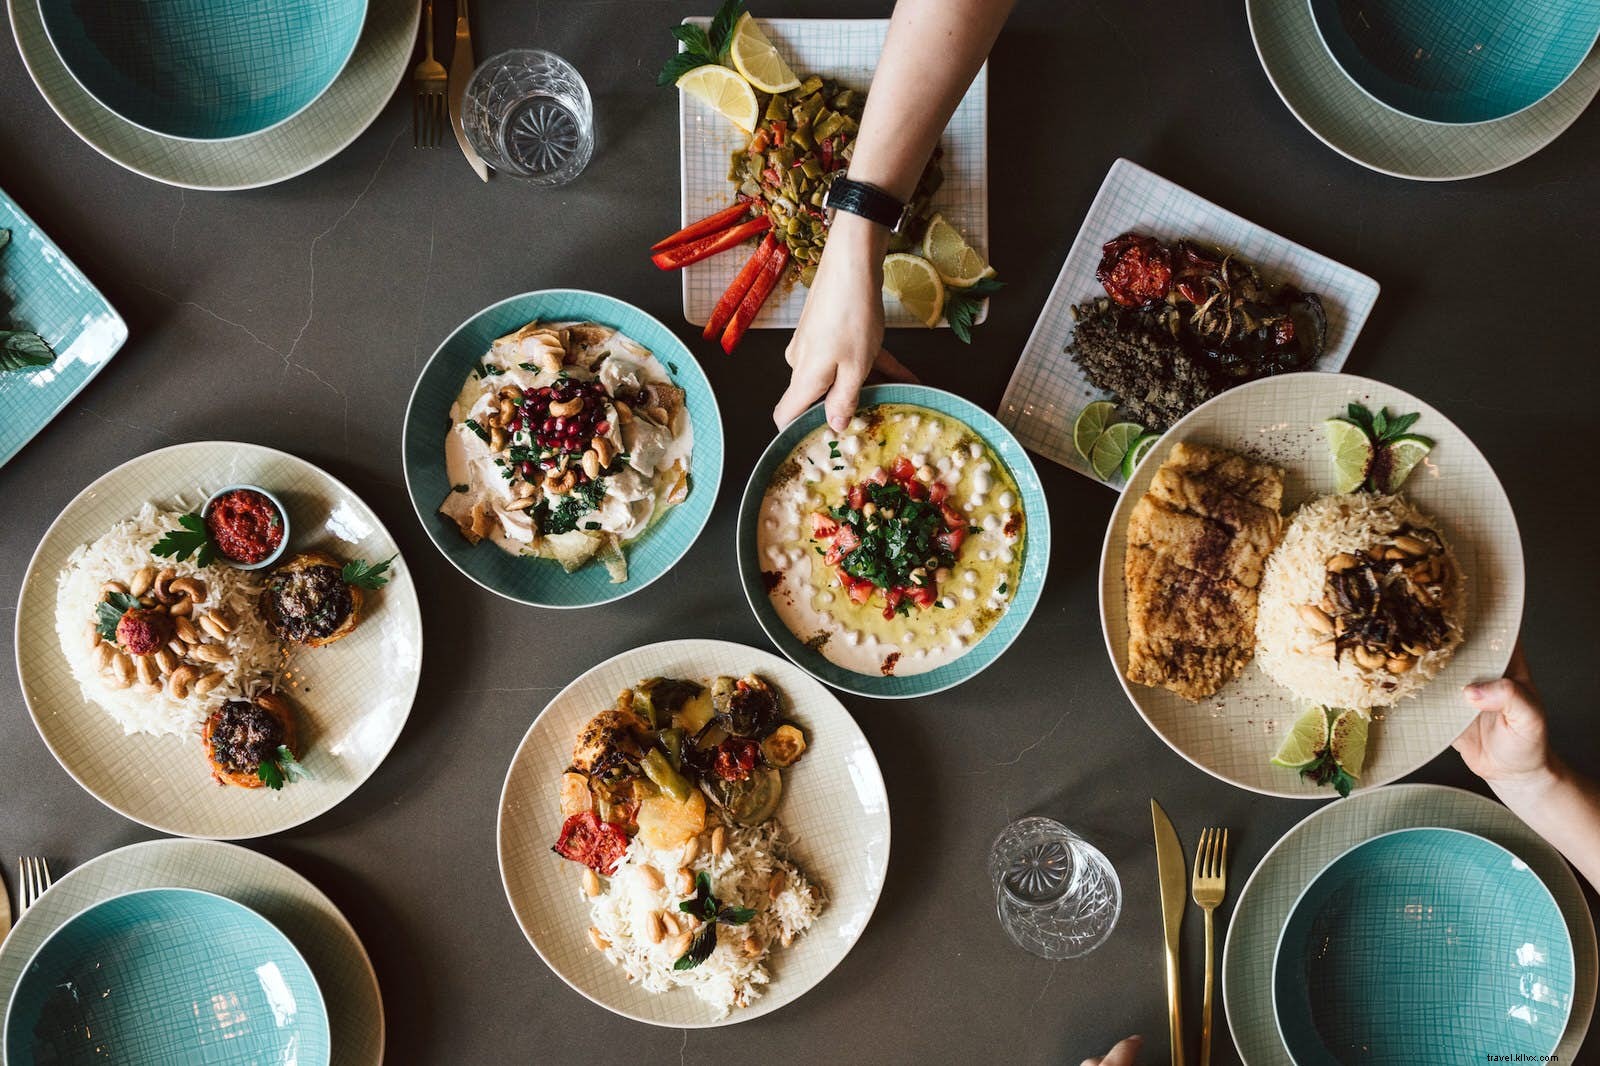 Mangia bene, fare del bene:10 ristoranti che migliorano la vita dei rifugiati 